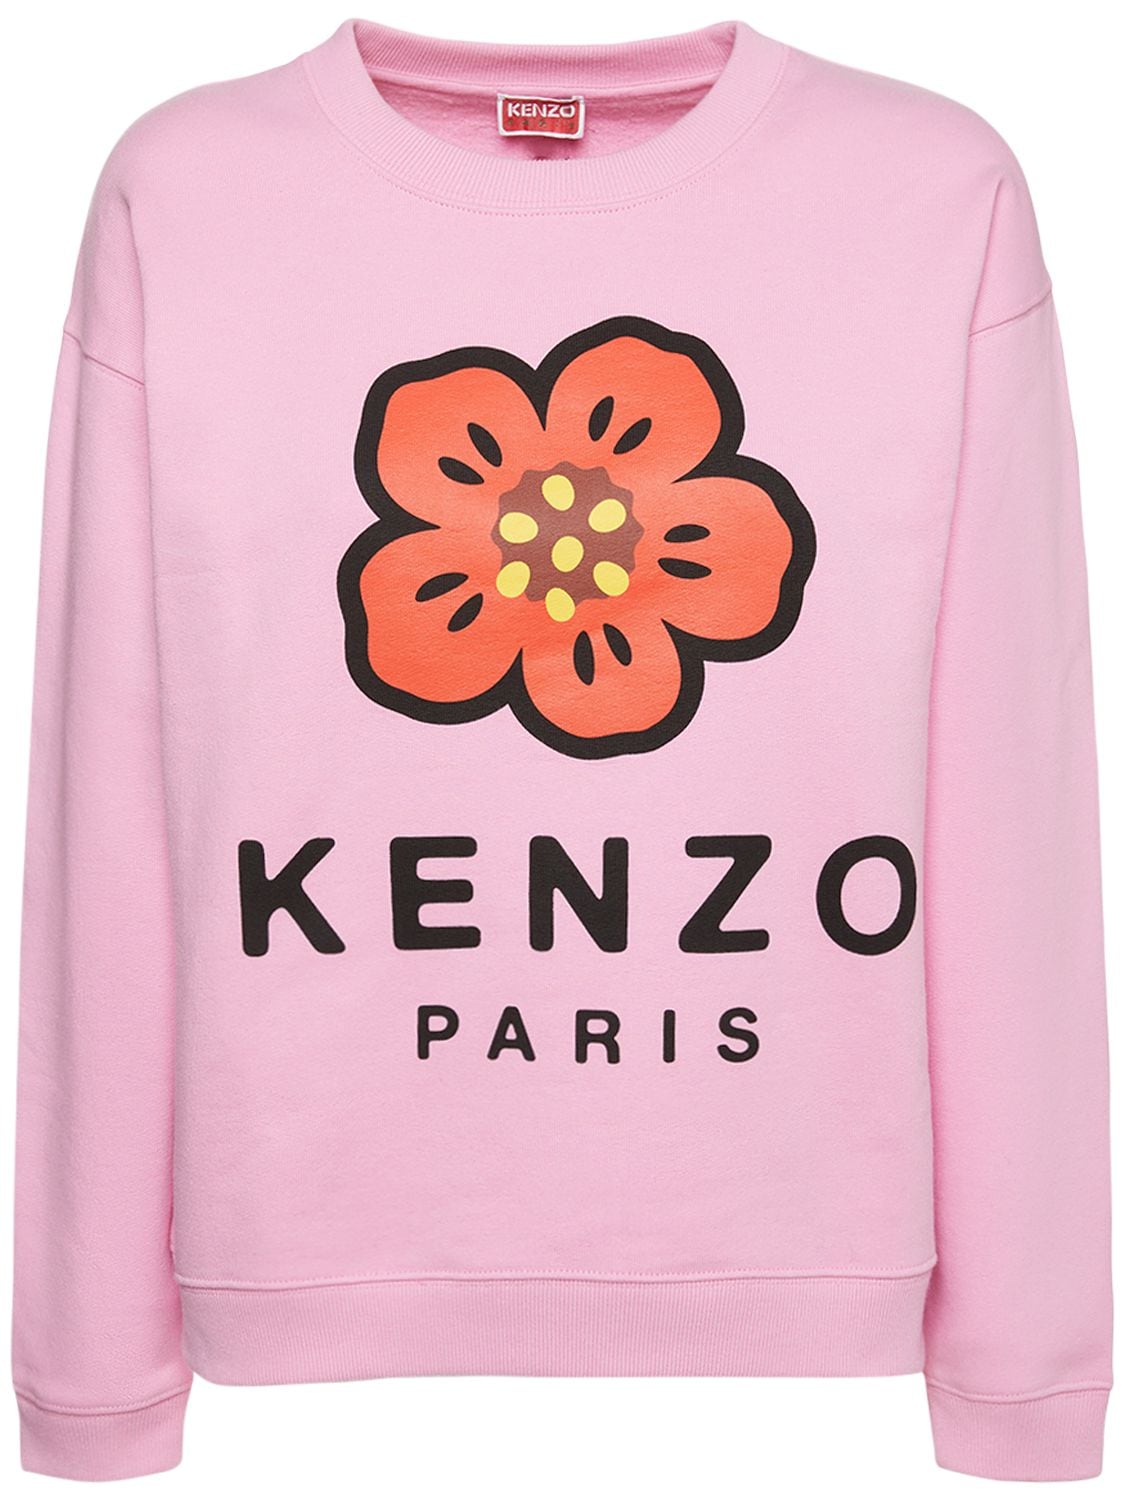 KENZO PARIS Printed Logo Cotton Jersey Sweatshirt